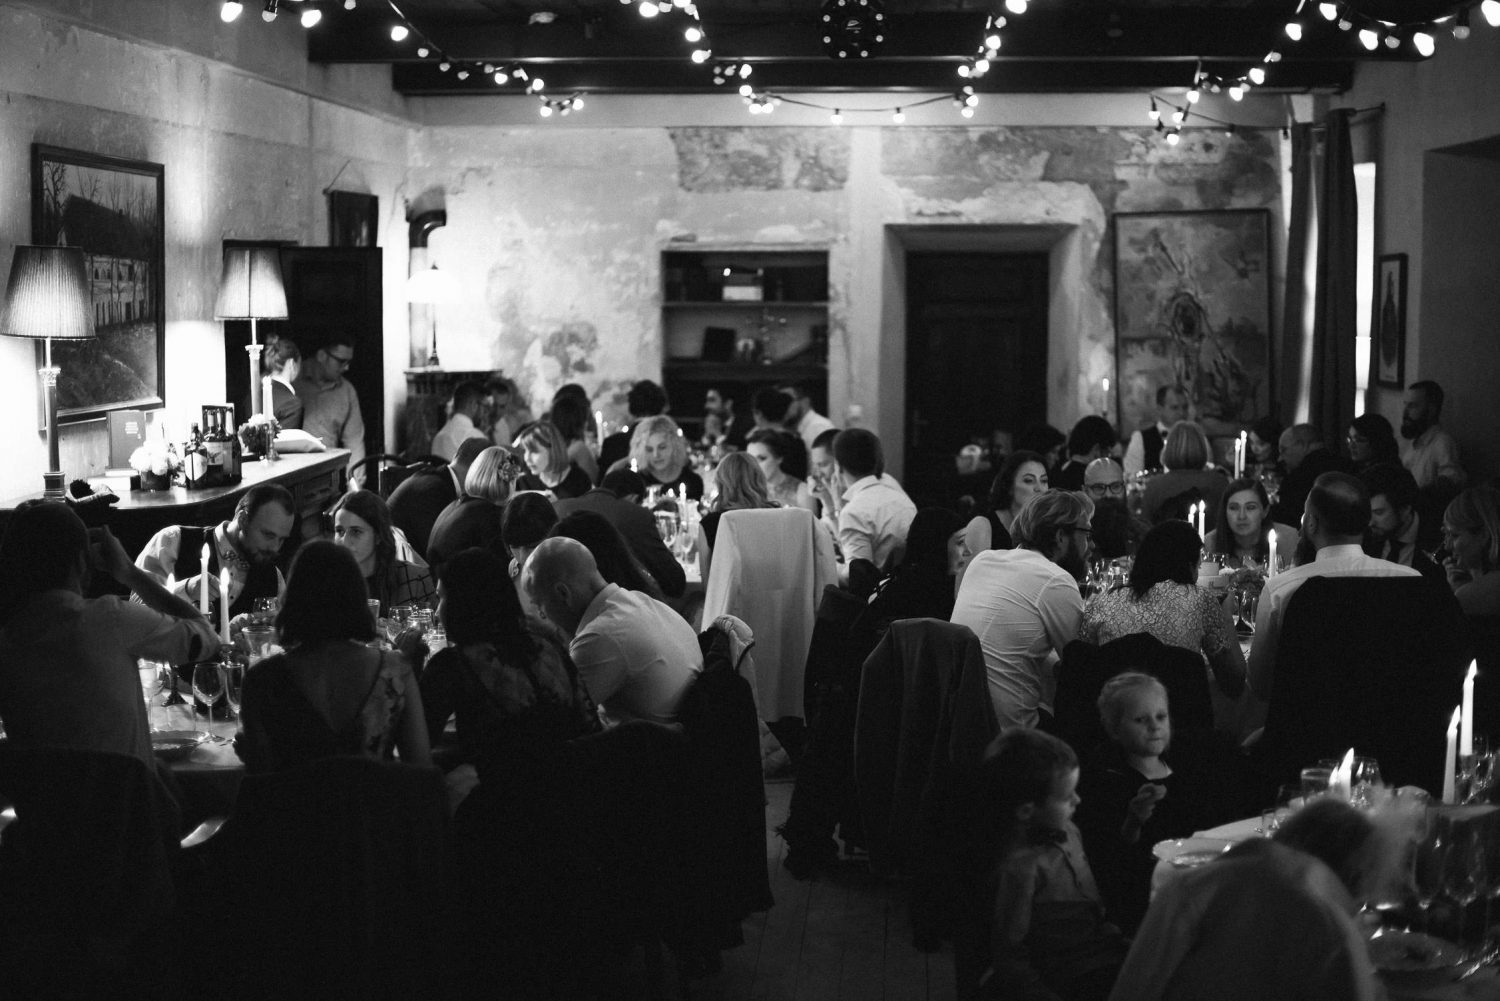 Vestuvių svečiai mėgaujasi maistu ir pokalbiais Babtyno-Žemaitkiemio dvaro salėje